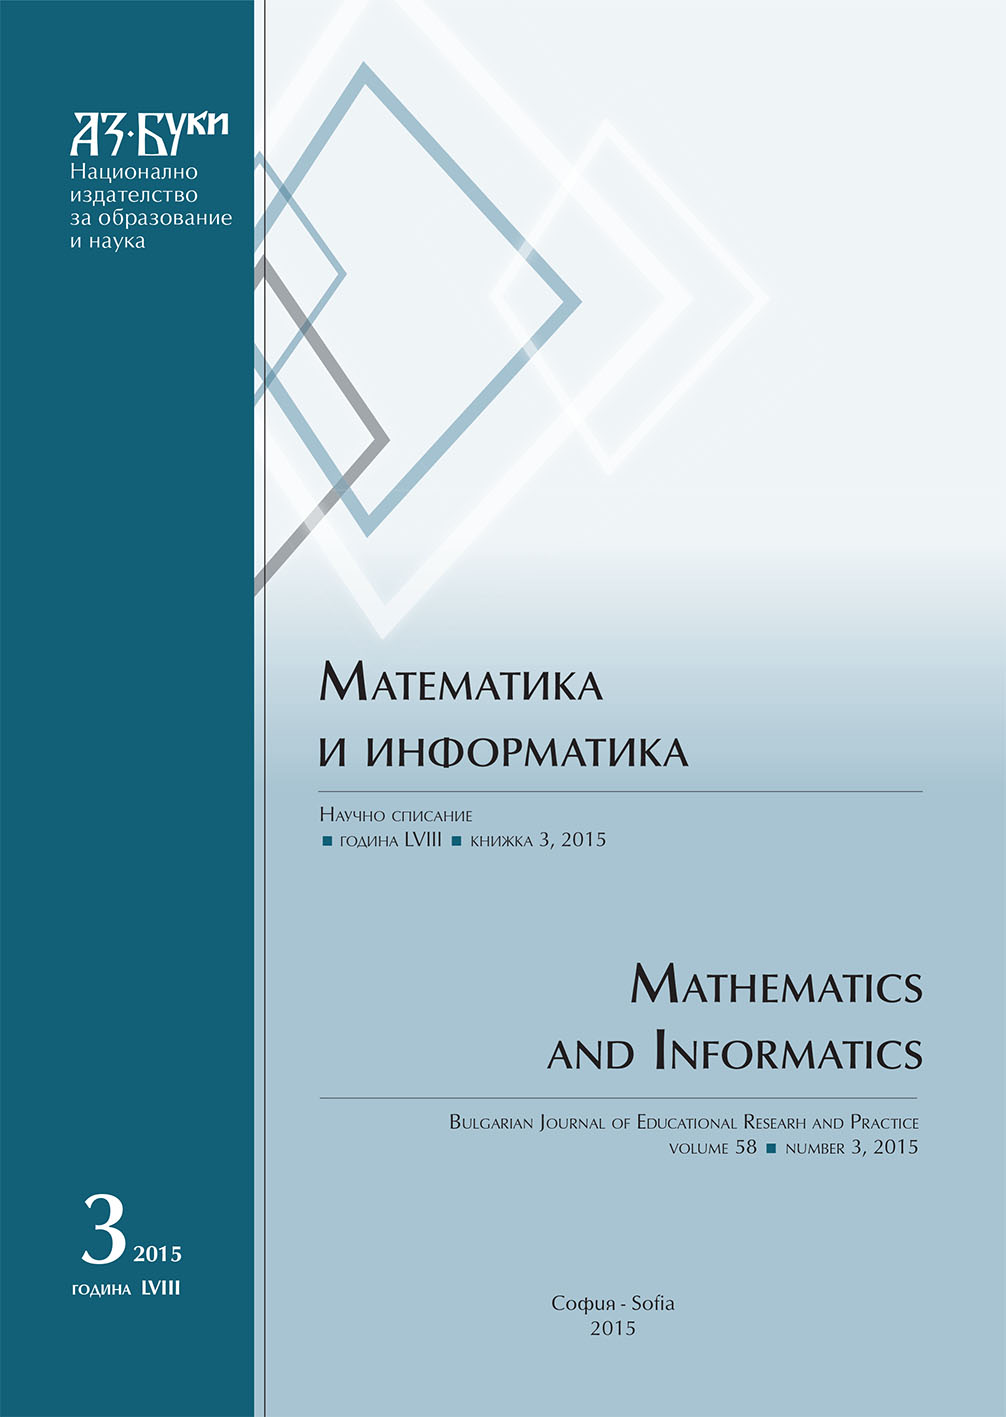 Елементарни аритметични задачи. Структура и математически модел. Класификация. Текстови задачи